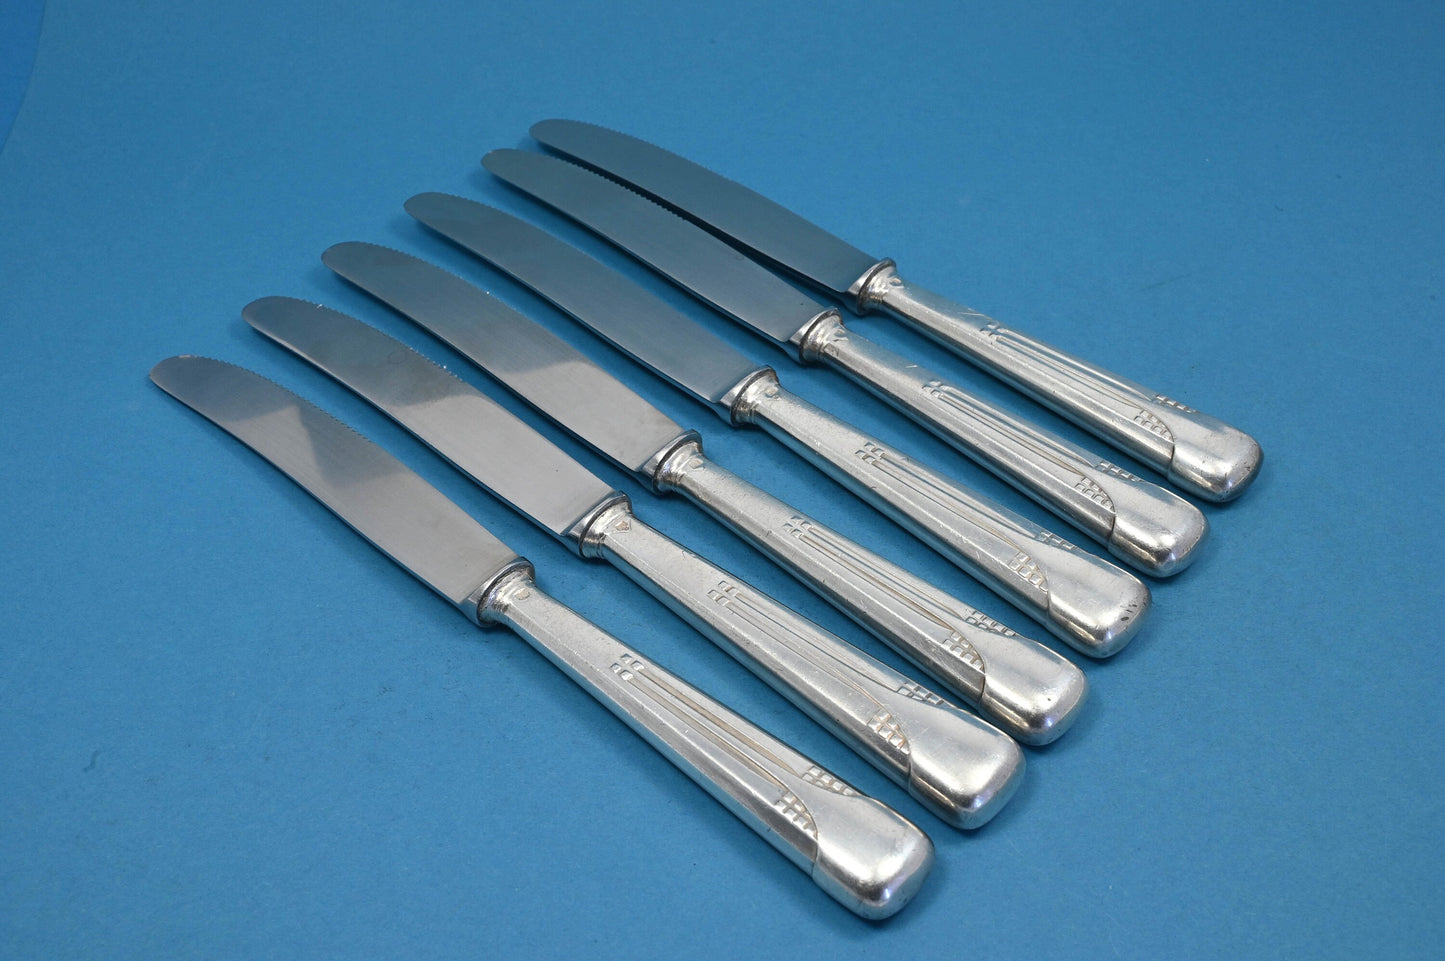 Sechs Messer von WMF, Würfelmuster WMF 34